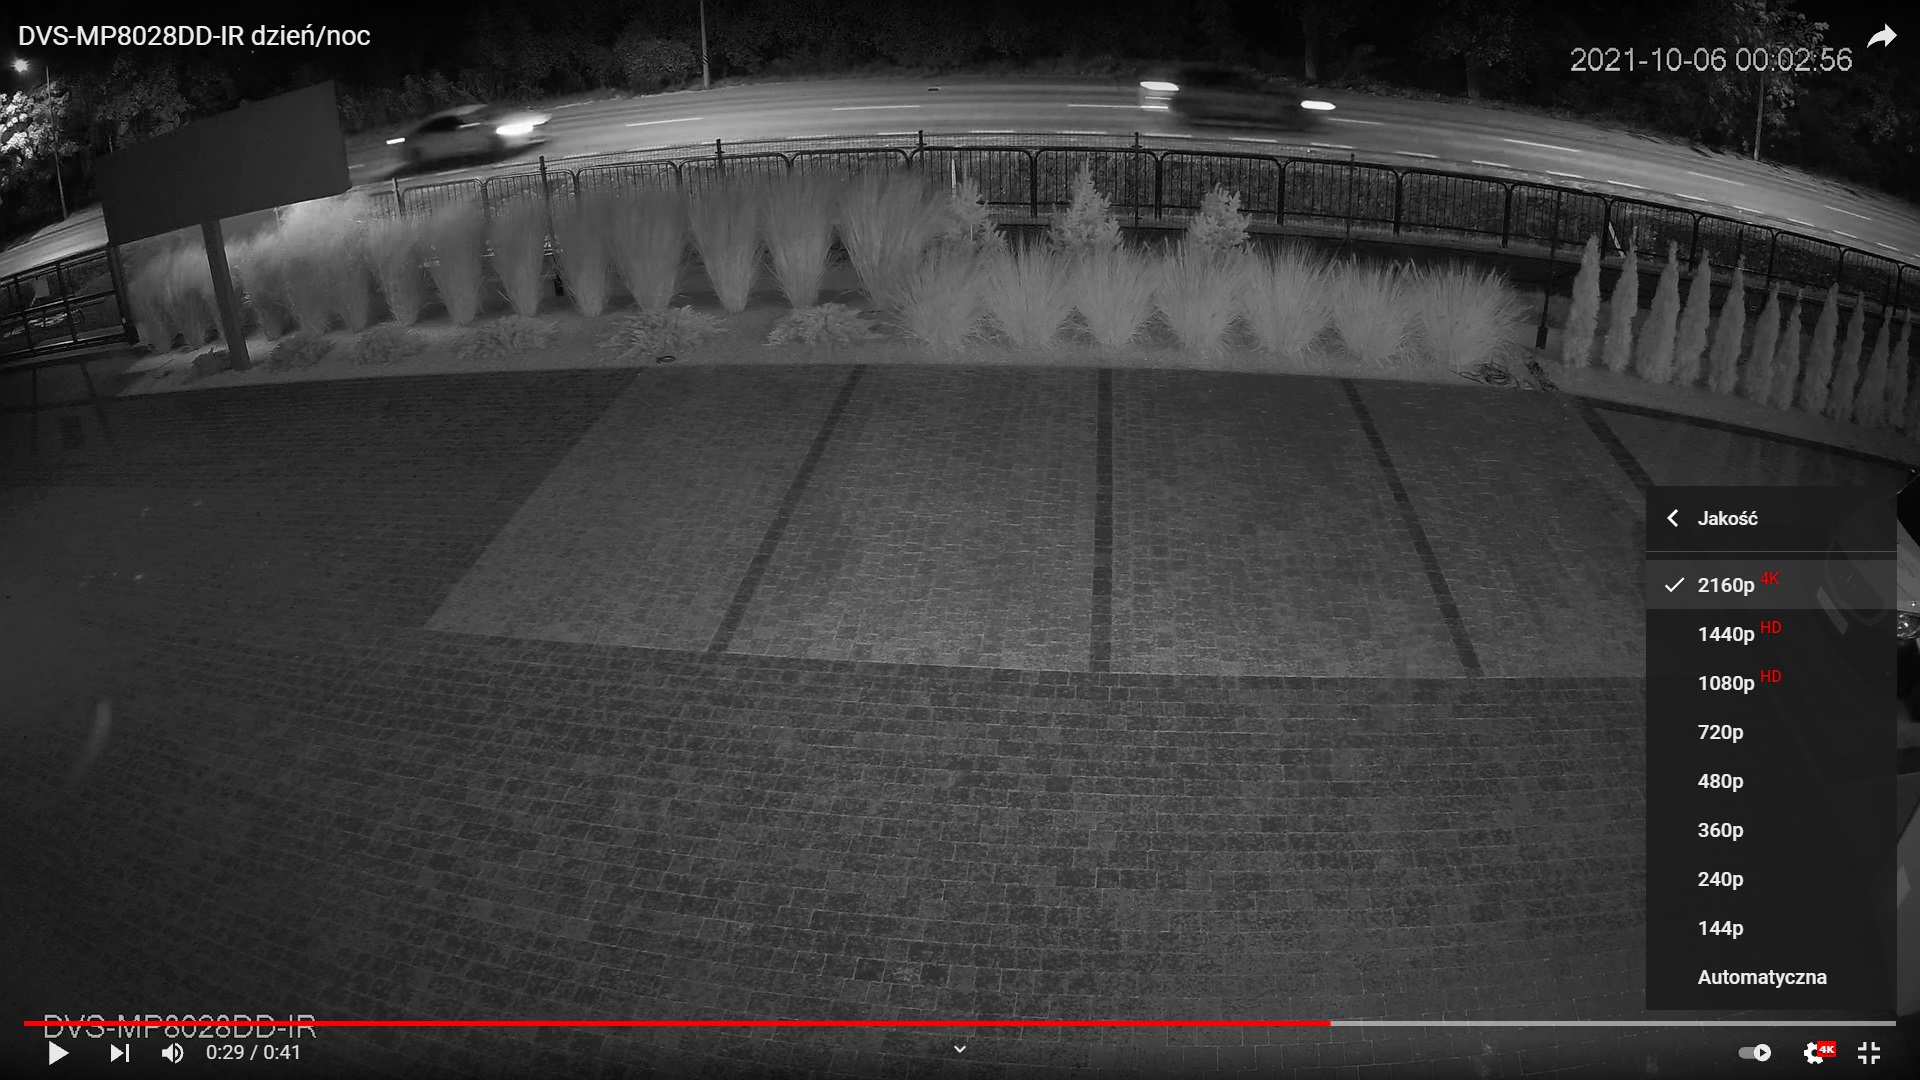 Nagranie z kamery DVS-MP8028DD-IR w nocy